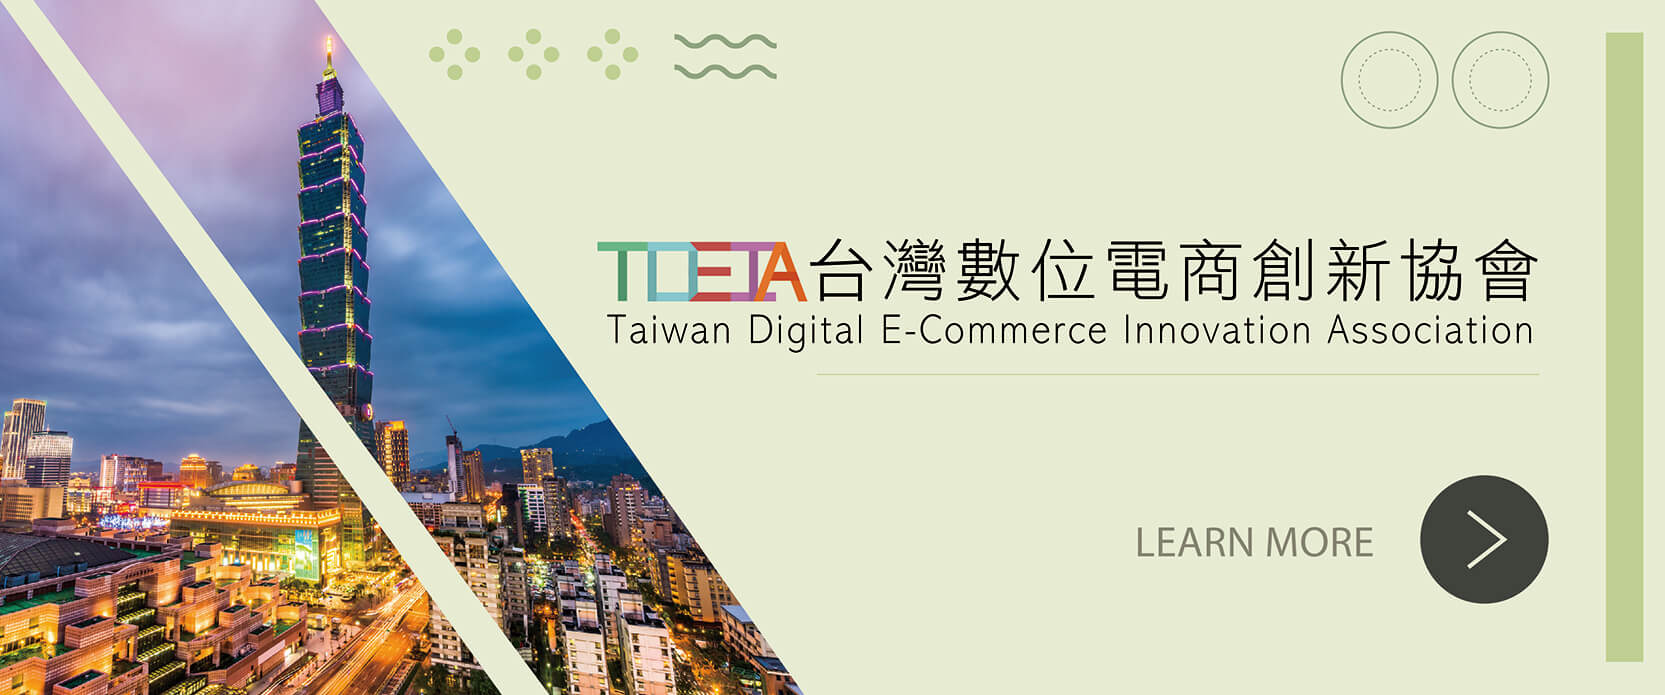 關於台灣數位電商創新協會